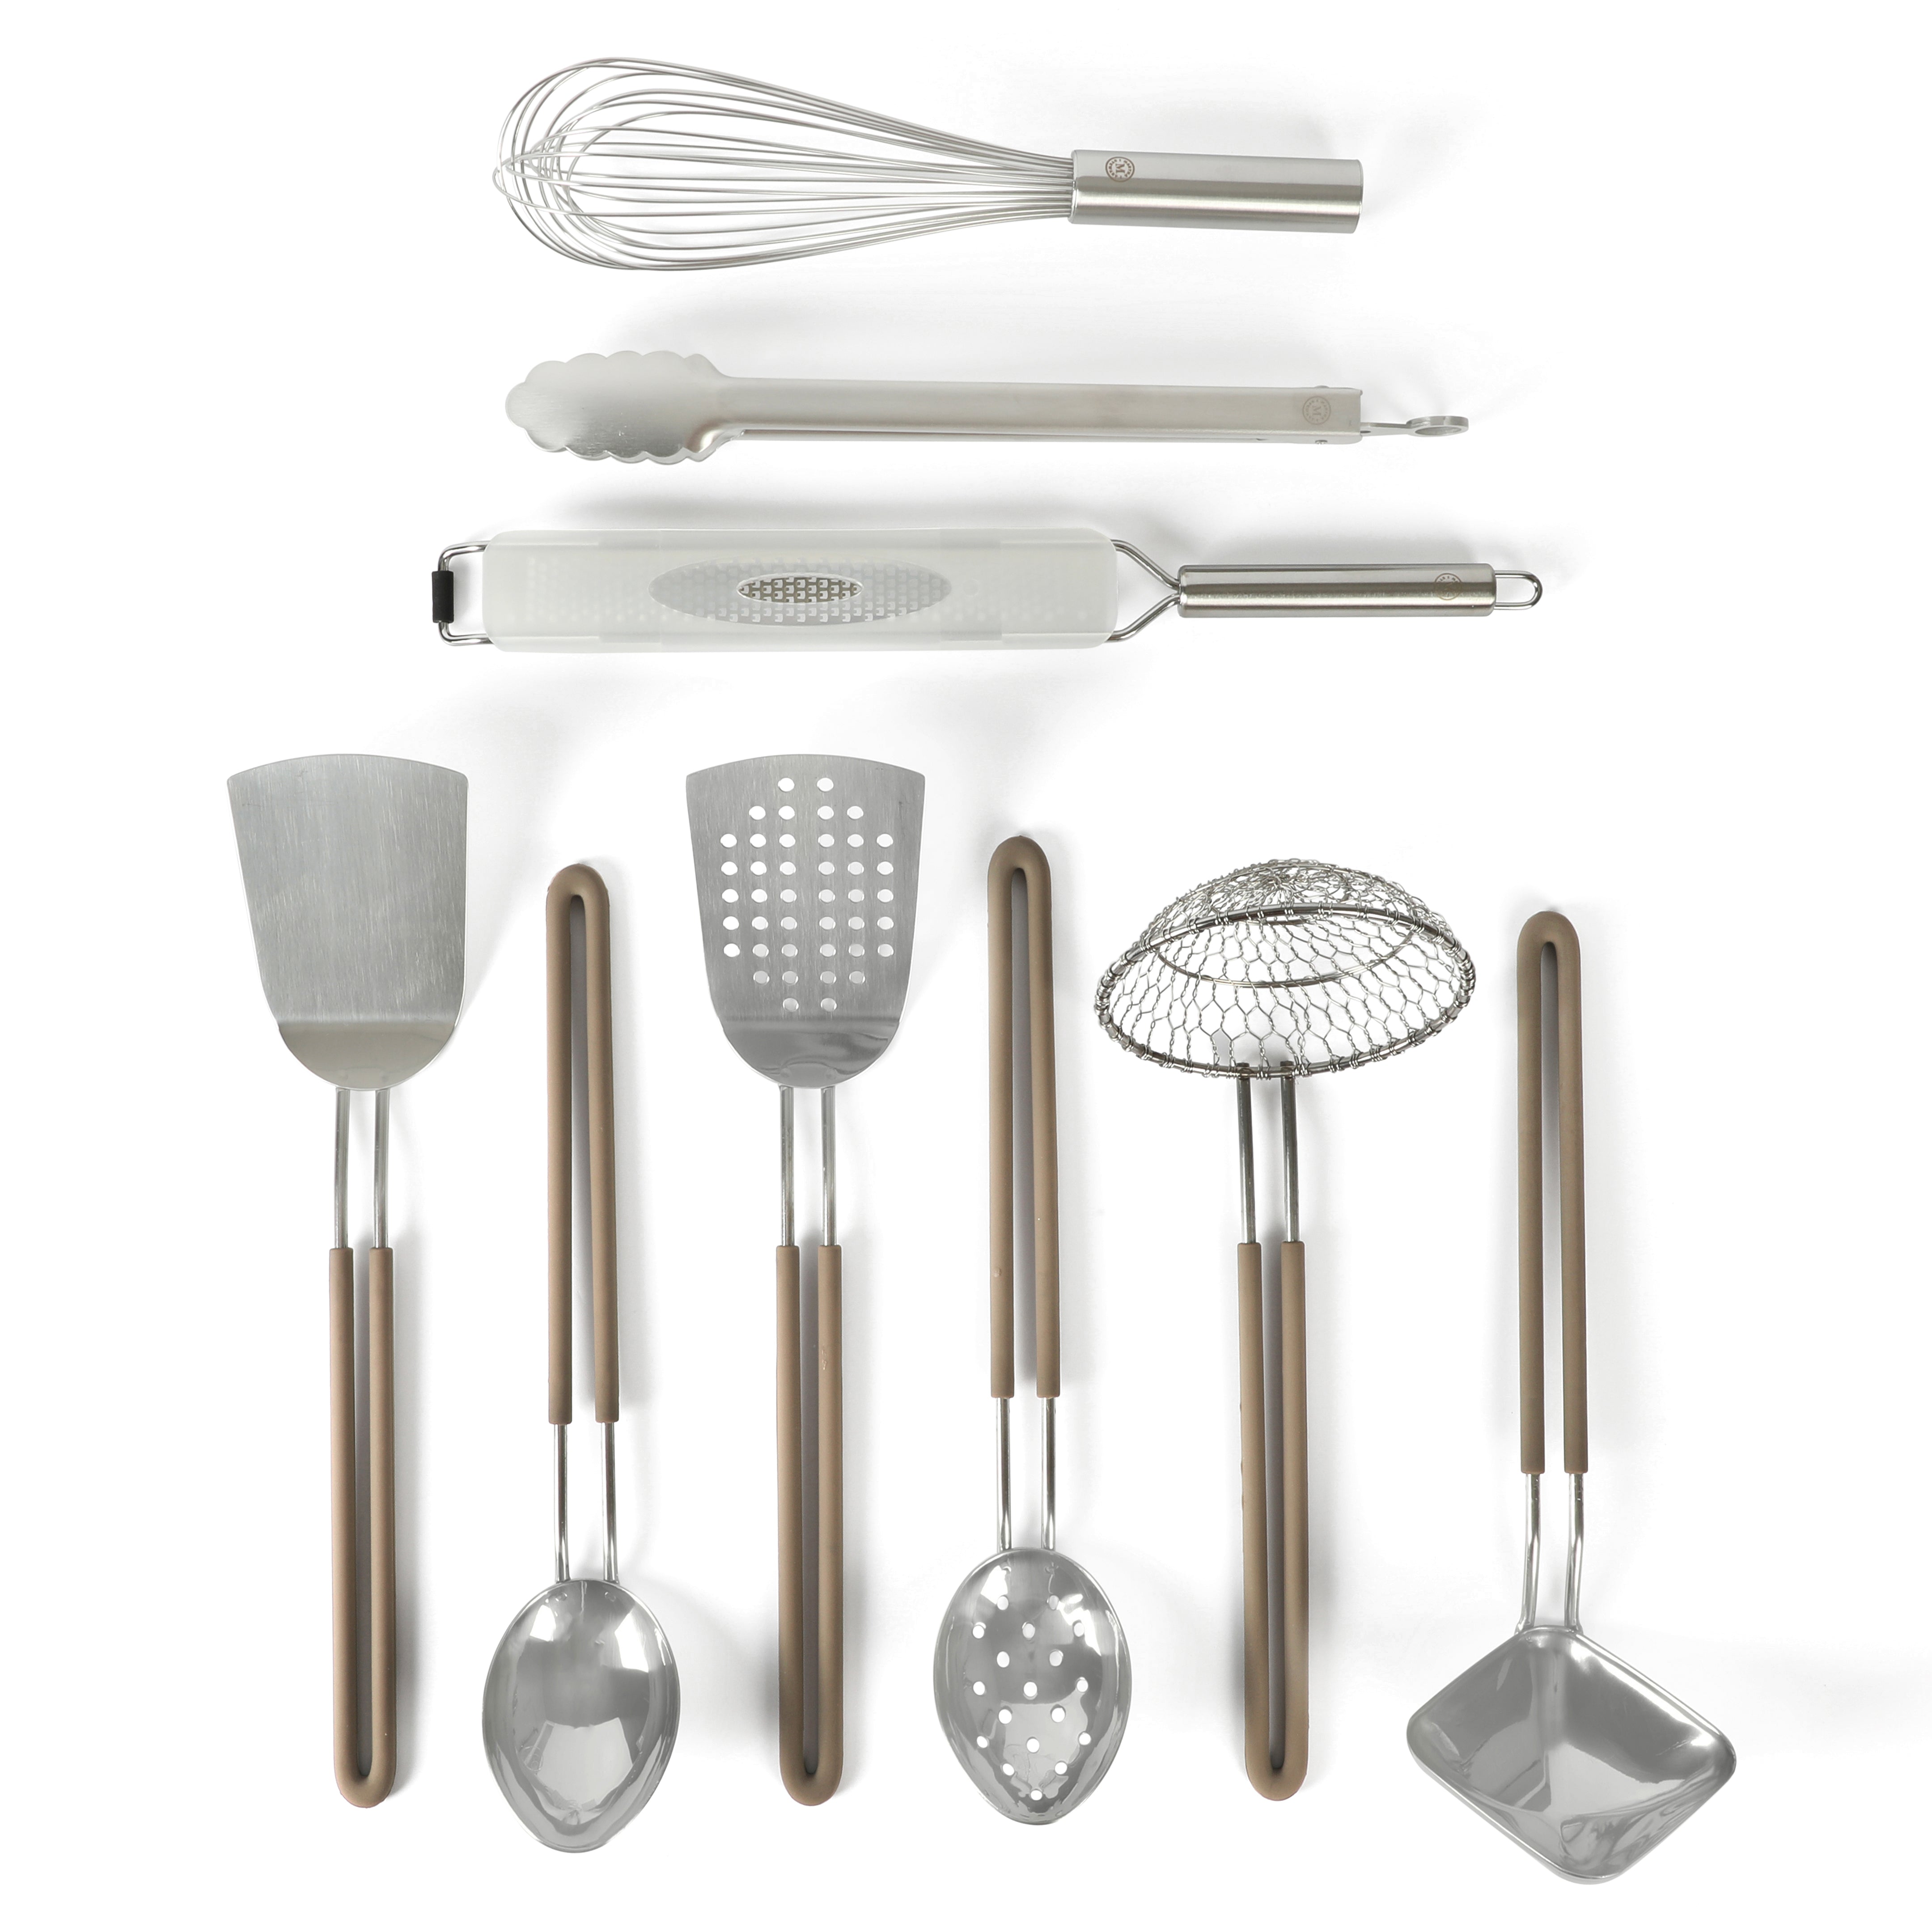 Martha Stewart 9-Piece Stainless Steel Prep & Serve Kitchen Gadgets an